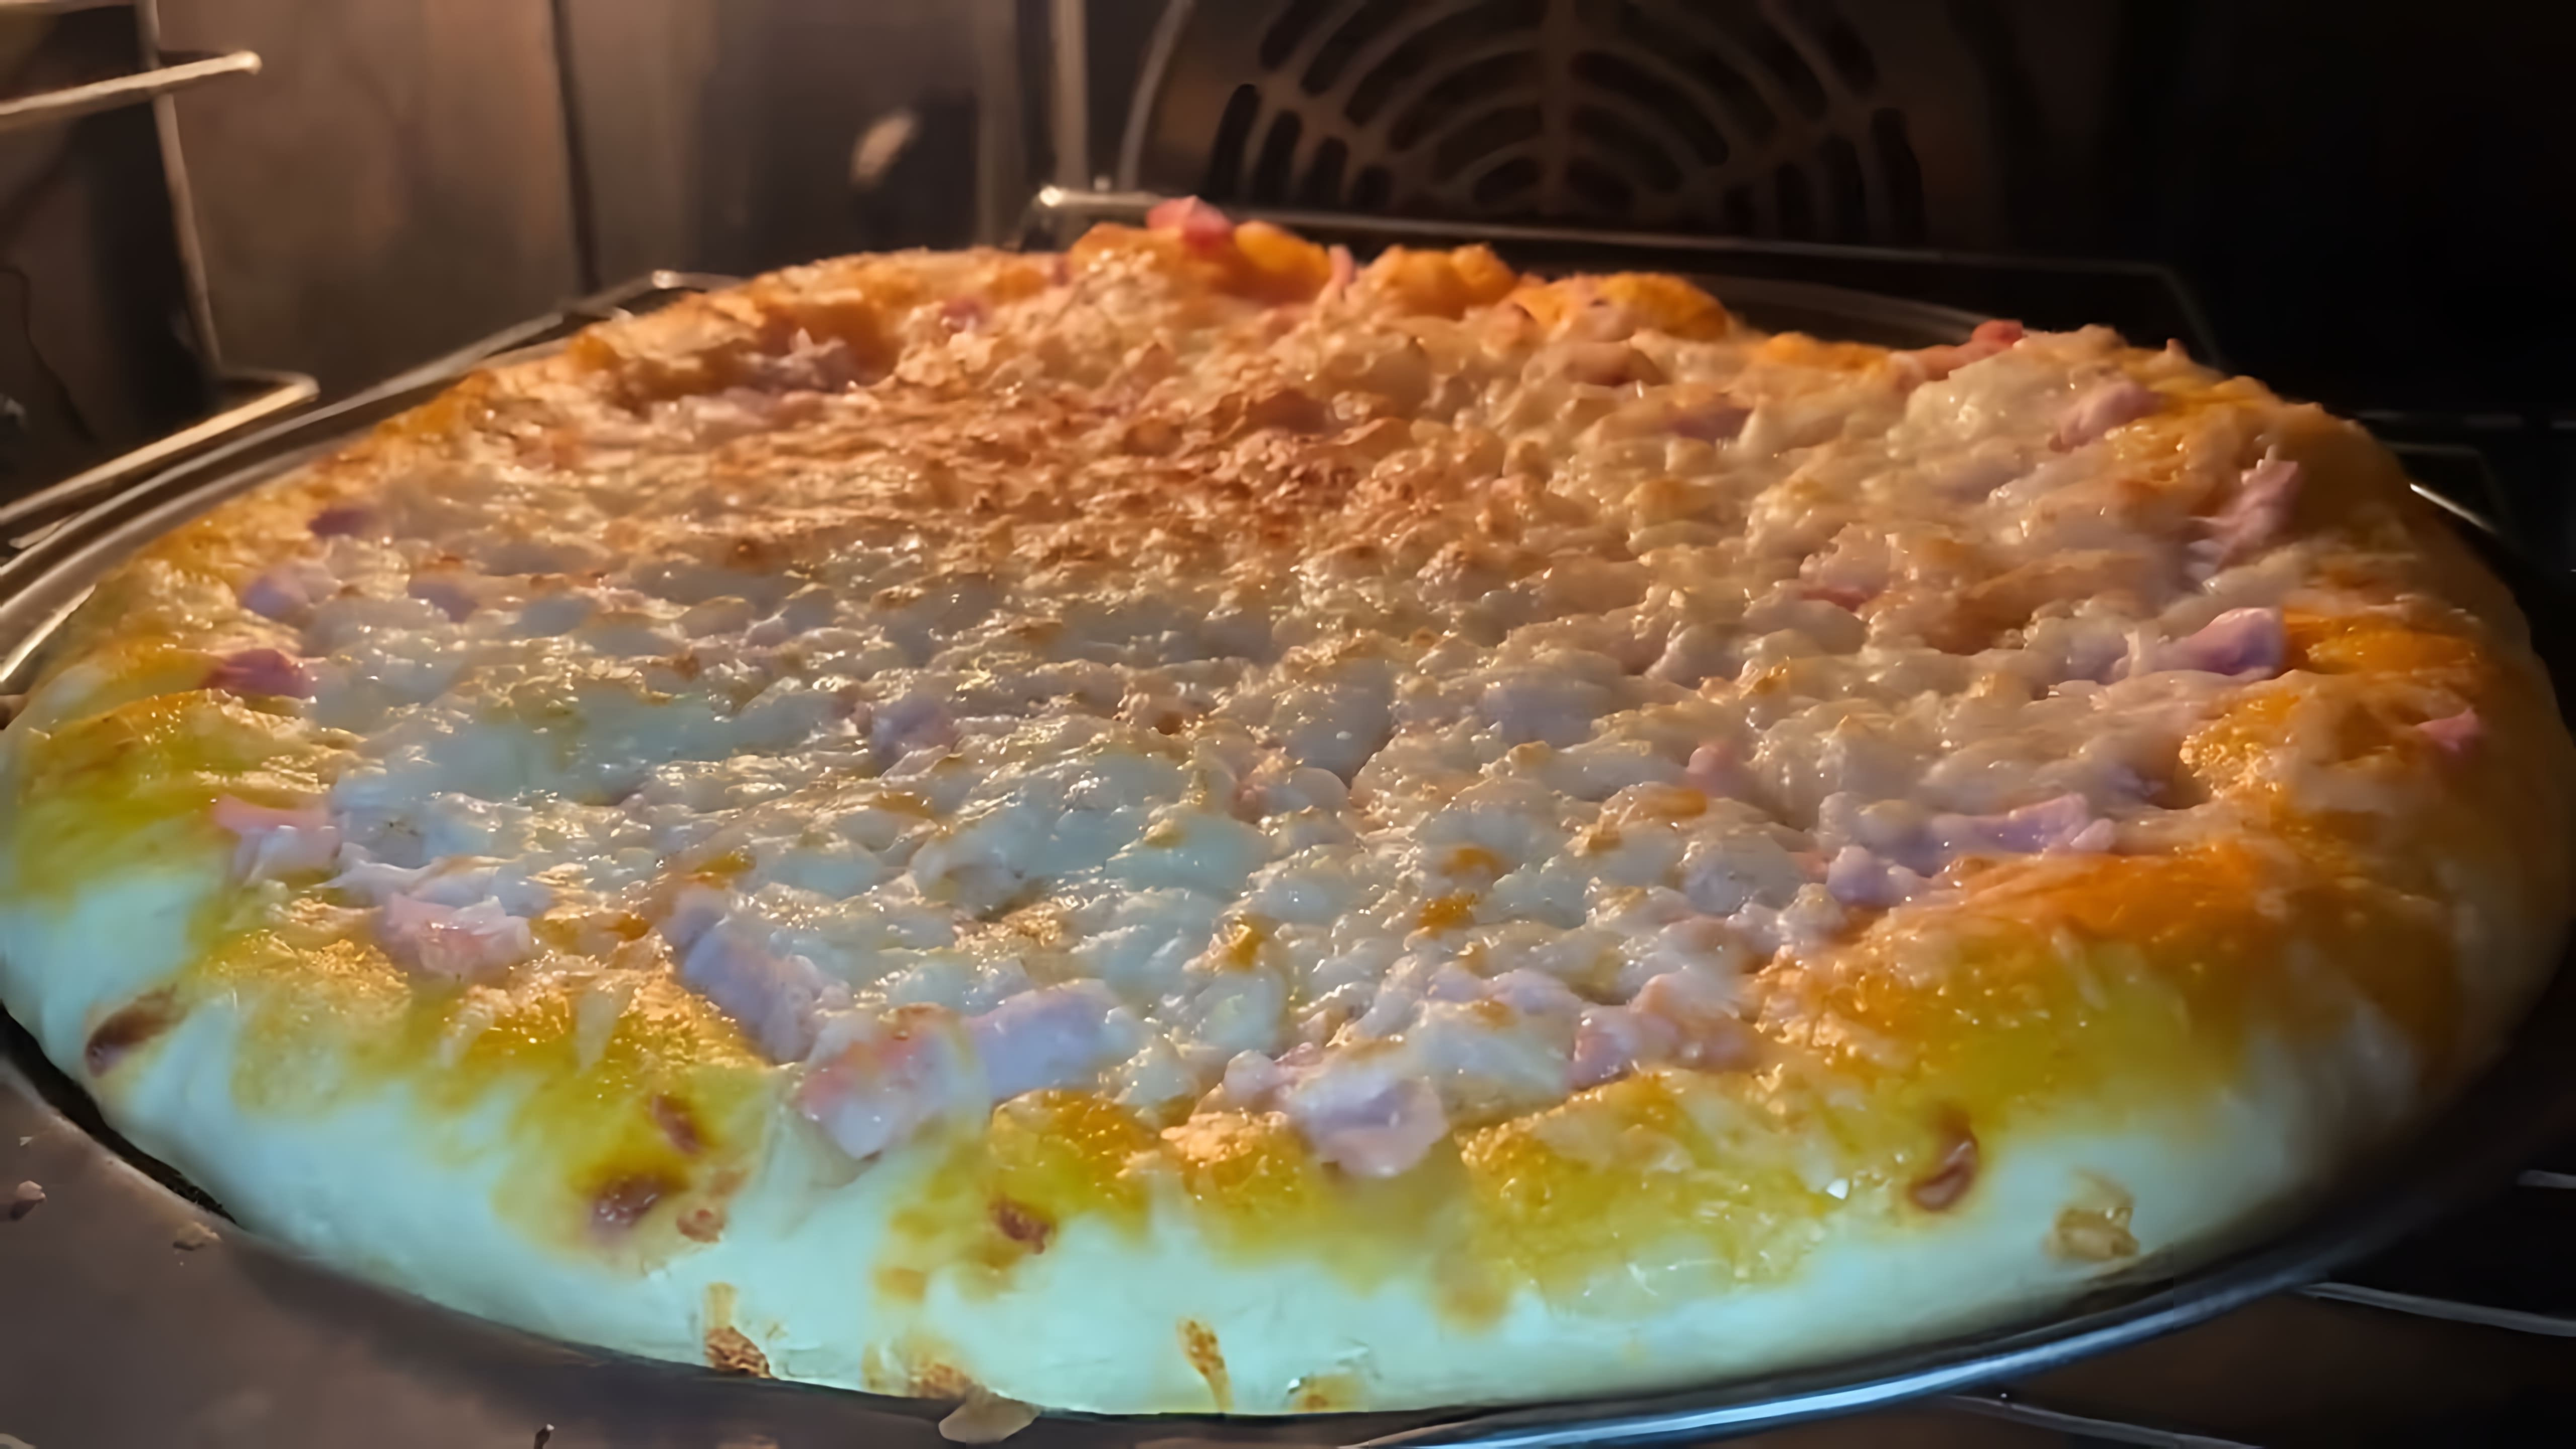 В этом видео демонстрируется простой рецепт теста для пиццы, который позволяет получить тонкую, хрустящую корочку с крупными воздушными пузырьками